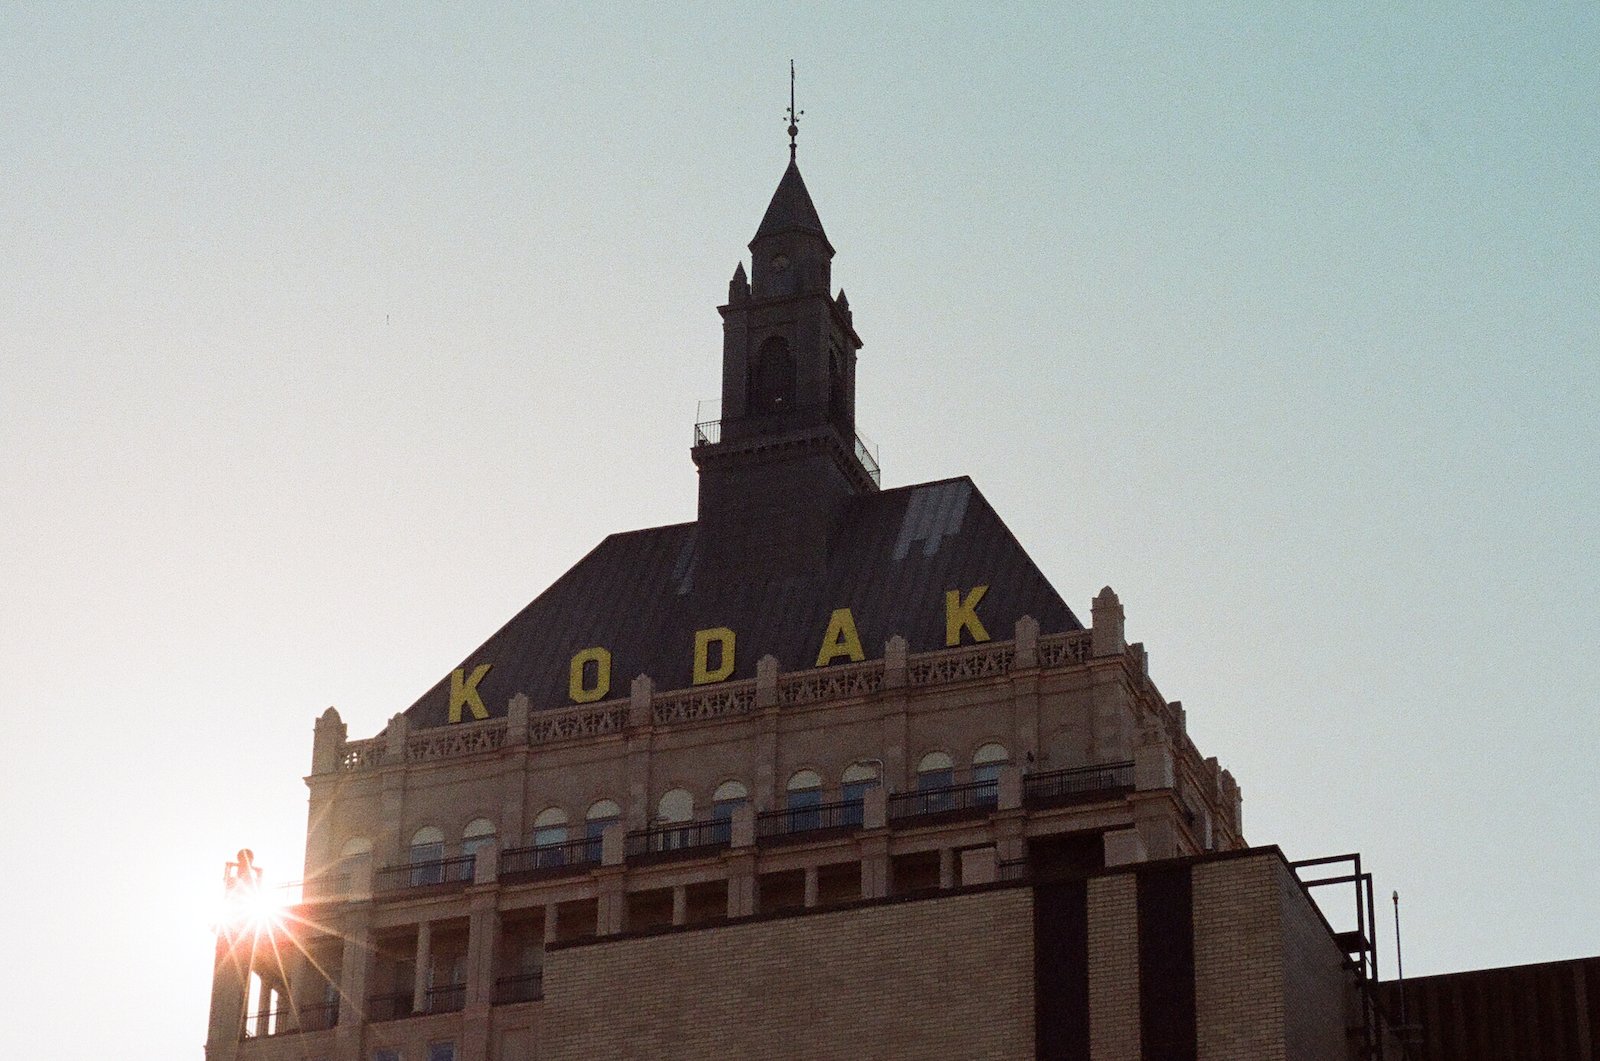  year-over-year kodak 